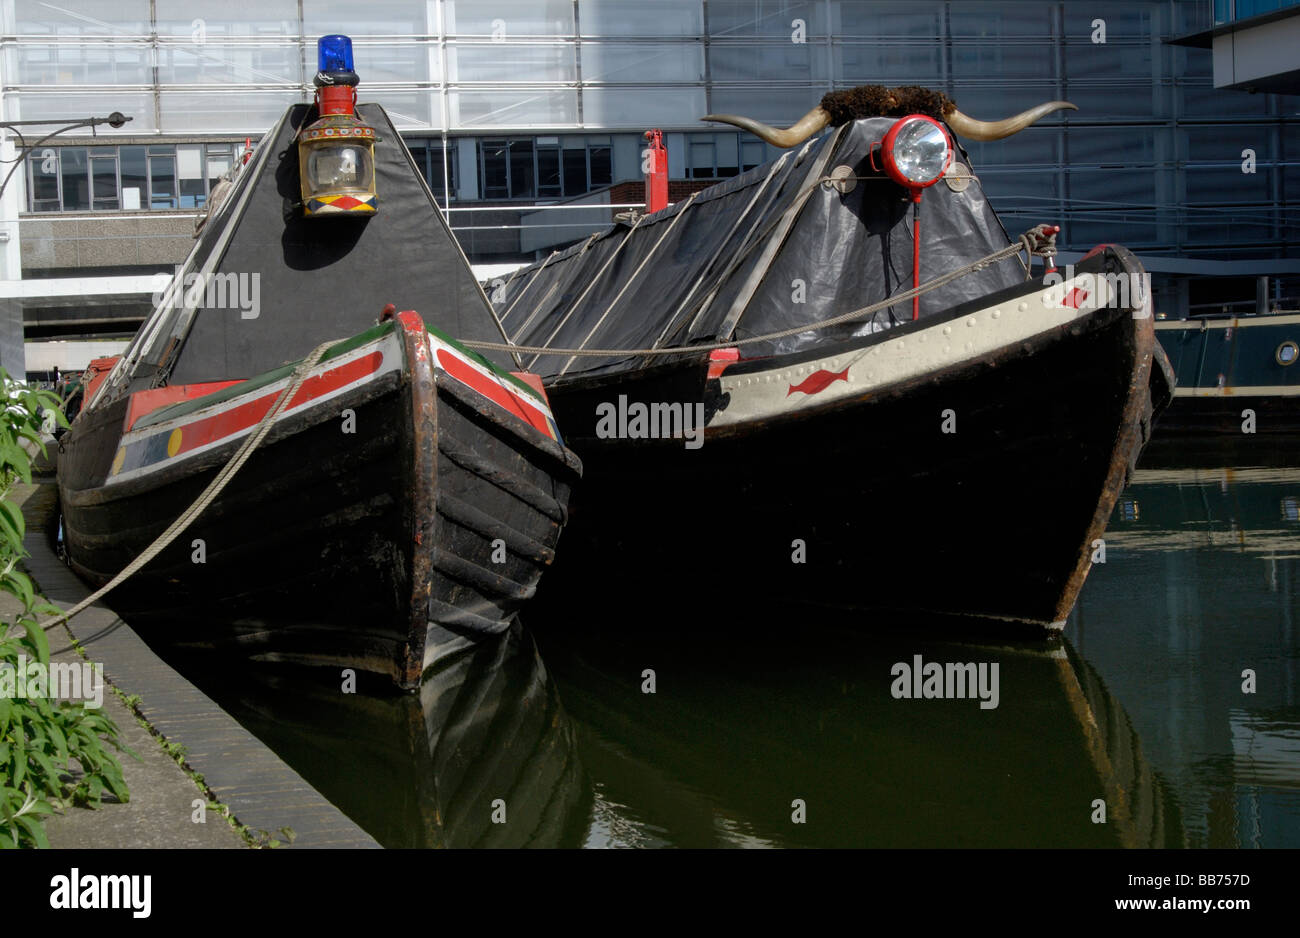 Arcs de deux vieux narrowboats travail avec lanterne et diriger des cornes, du bassin de Paddington, Londres, Angleterre Banque D'Images